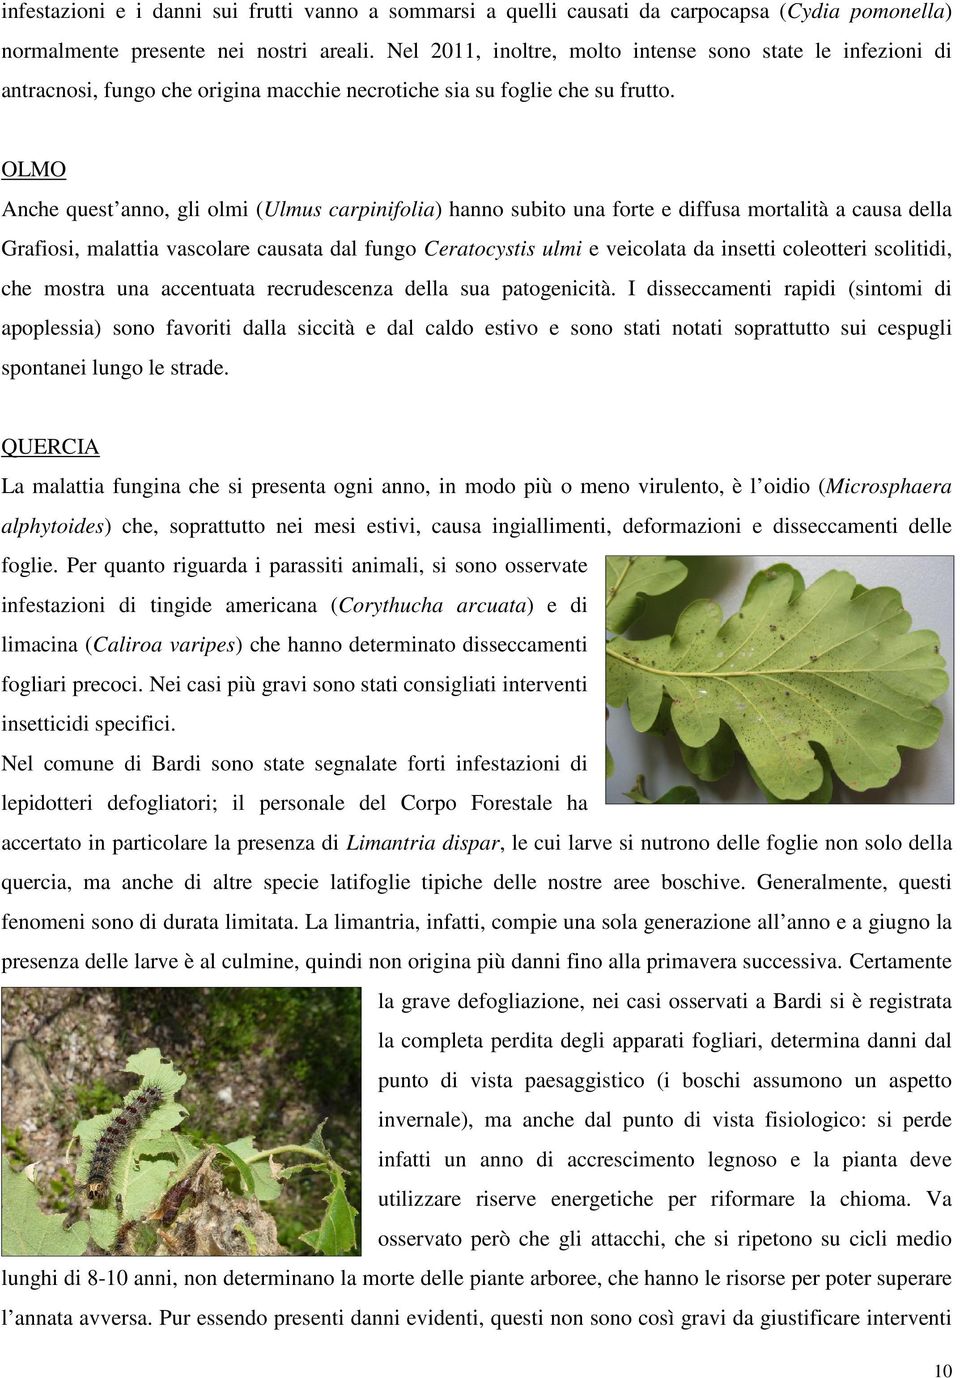 OLMO Anche quest anno, gli olmi (Ulmus carpinifolia) hanno subito una forte e diffusa mortalità a causa della Grafiosi, malattia vascolare causata dal fungo Ceratocystis ulmi e veicolata da insetti